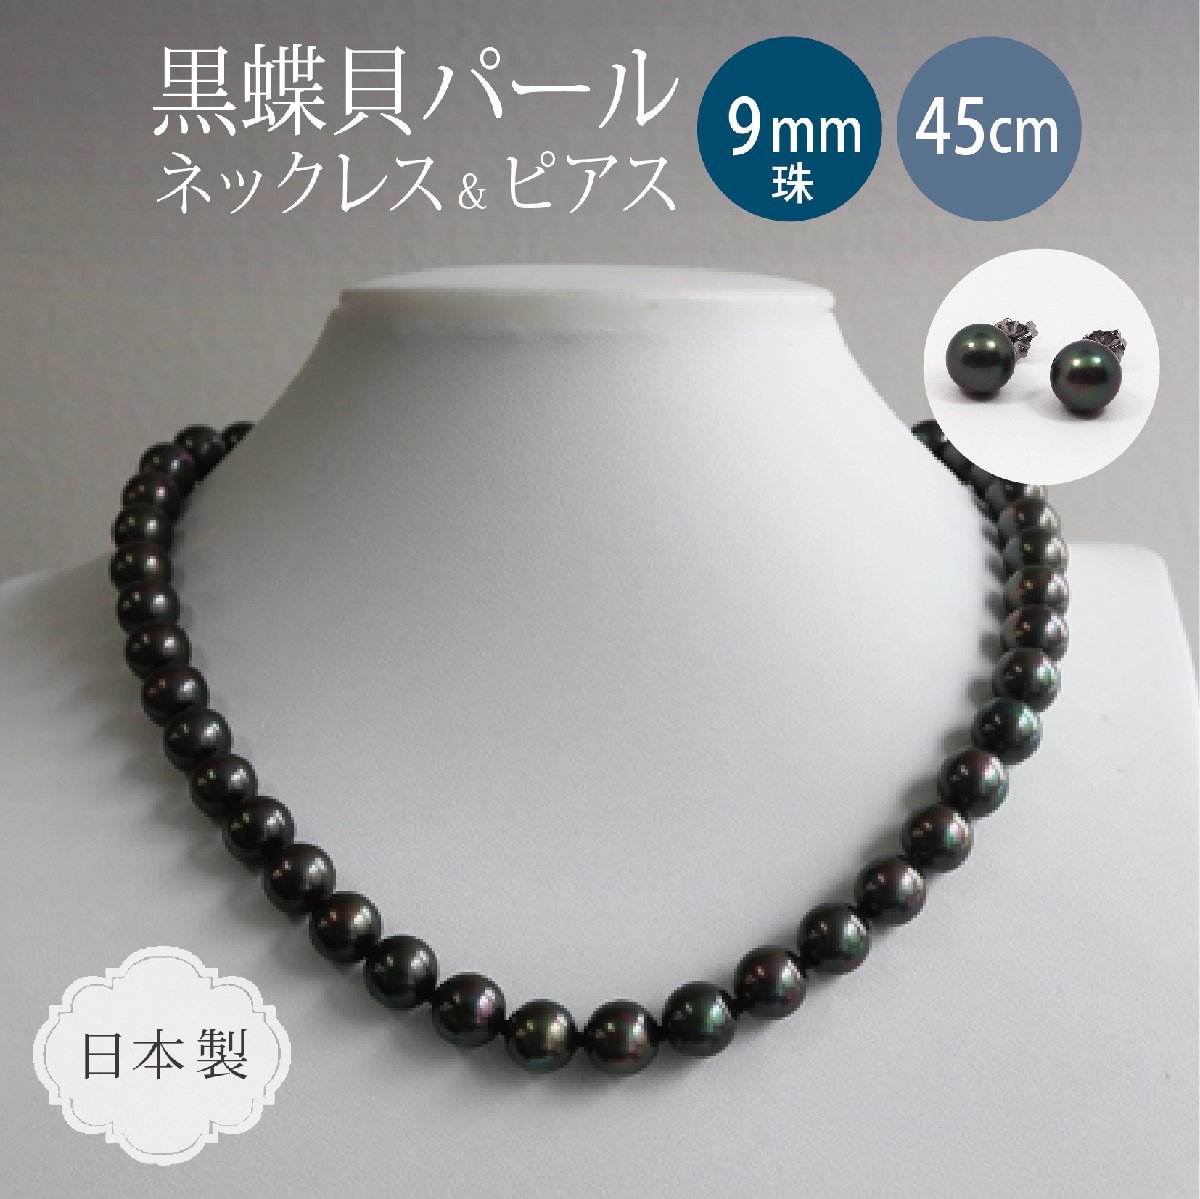 黒真珠 ネックレス ピアスセット・ピーコック系カラー / 黒蝶貝パール 9.0ミリアップ 45センチサイズ ＜日本製＞